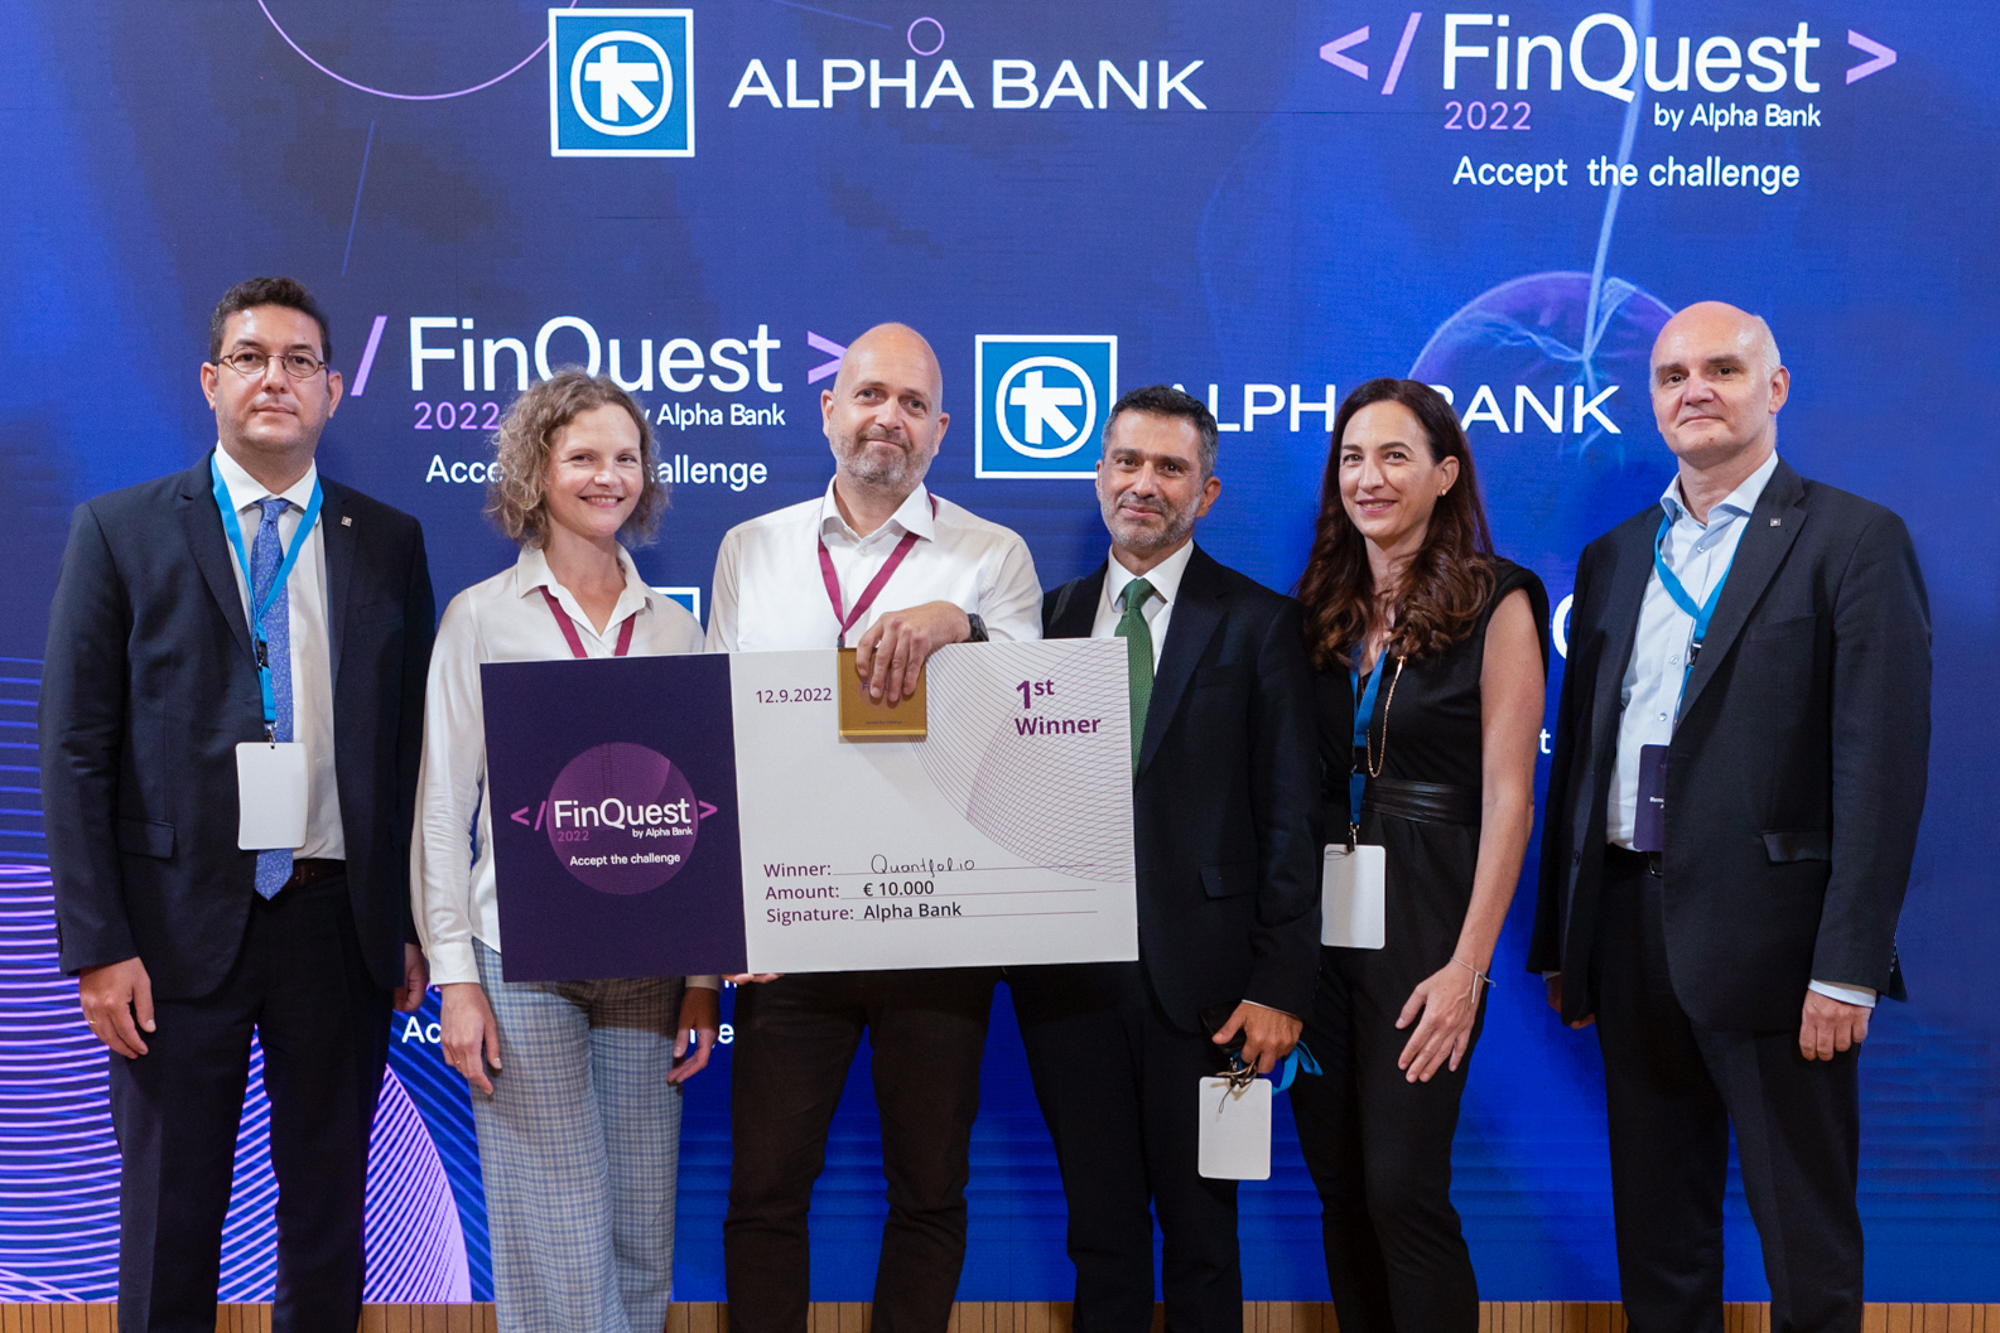 Οι νικητές του 1ου βραβείου, Quantifolio, με τους μέντορες της ομάδας, Στελέχη της Alpha Bank.